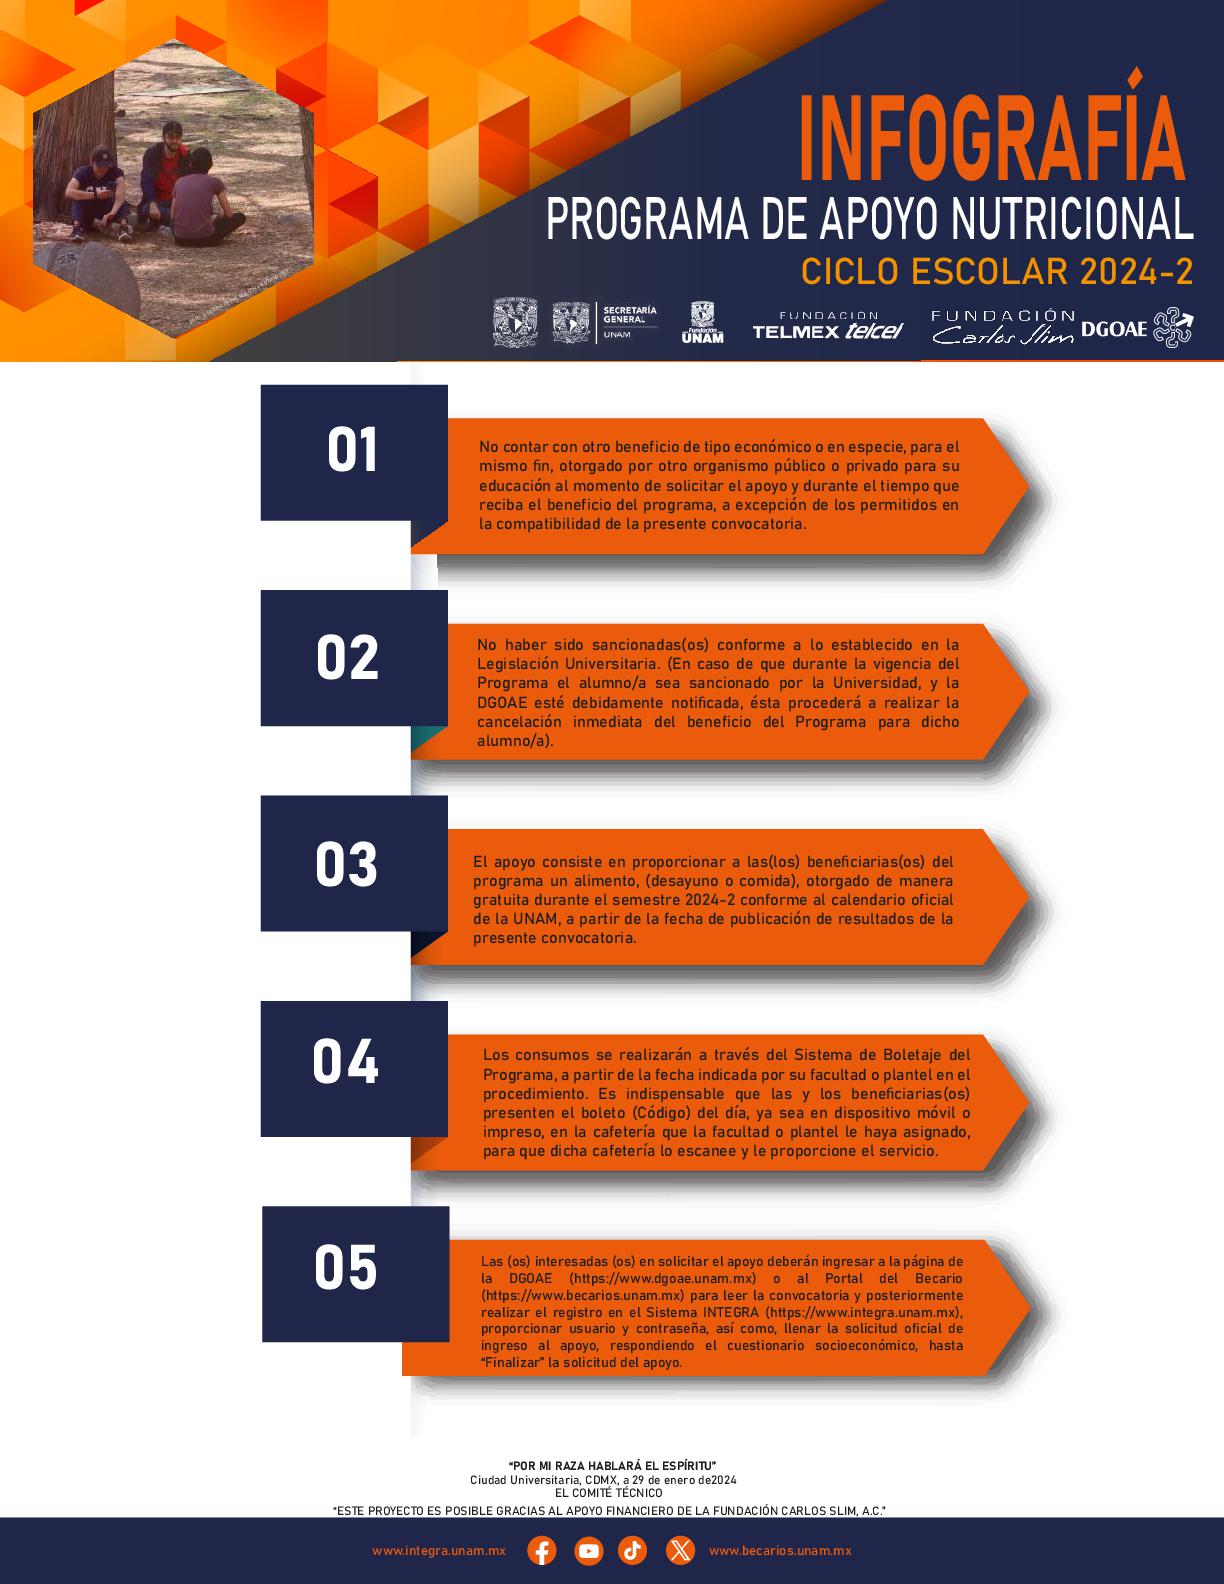 1.- PROGRAMA DE APOYO NUTRICIONAL 2024-2